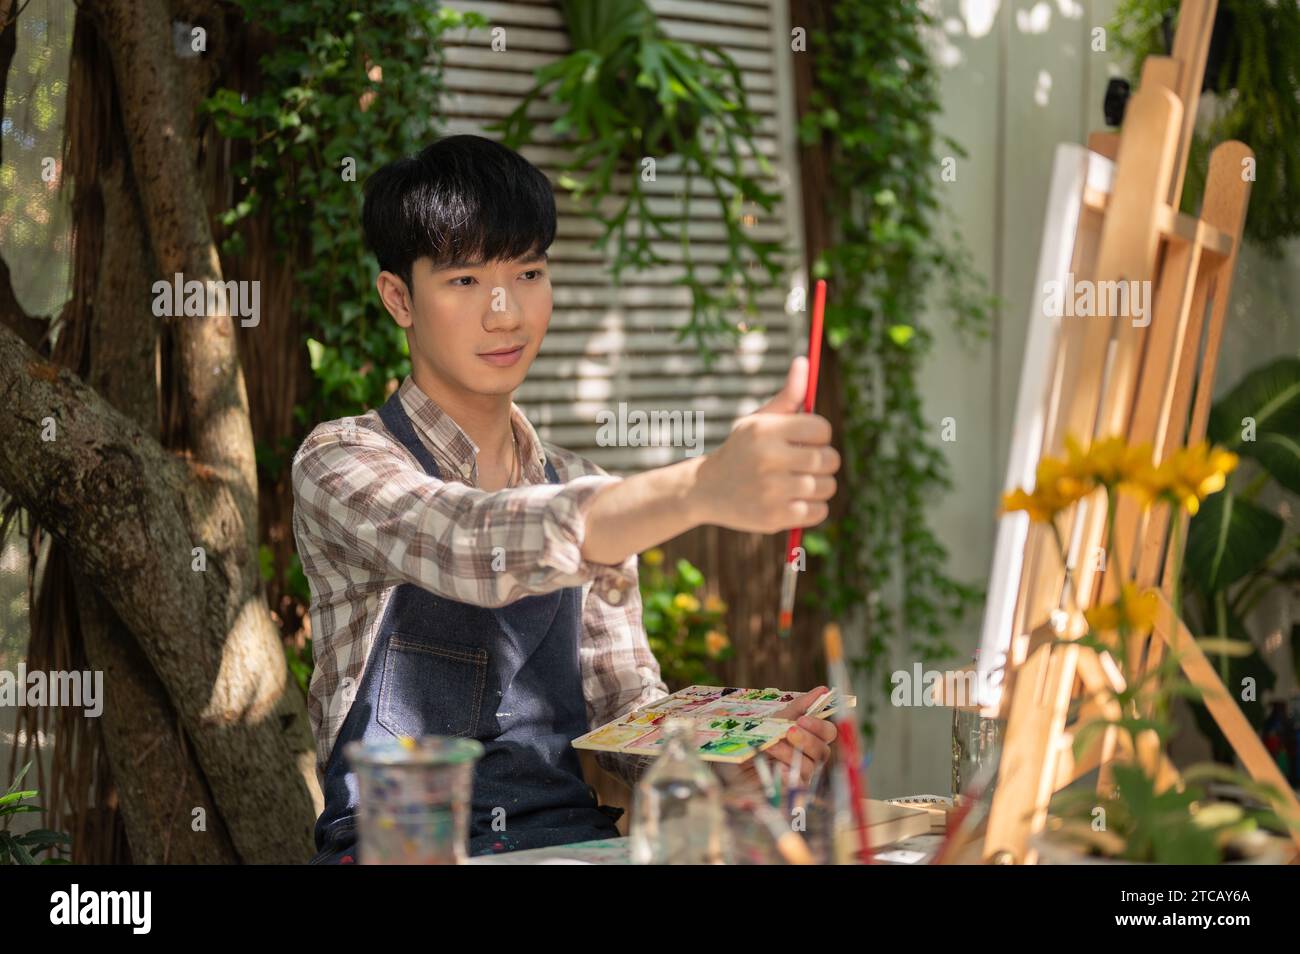 Ein fokussierter und gutaussehender junger asiatischer Mann in einer Schürze misst seine Zeichnung mit einem Pinsel auf einer Leinwand und macht ein Kunstwerk in seinem Garten. Stockfoto